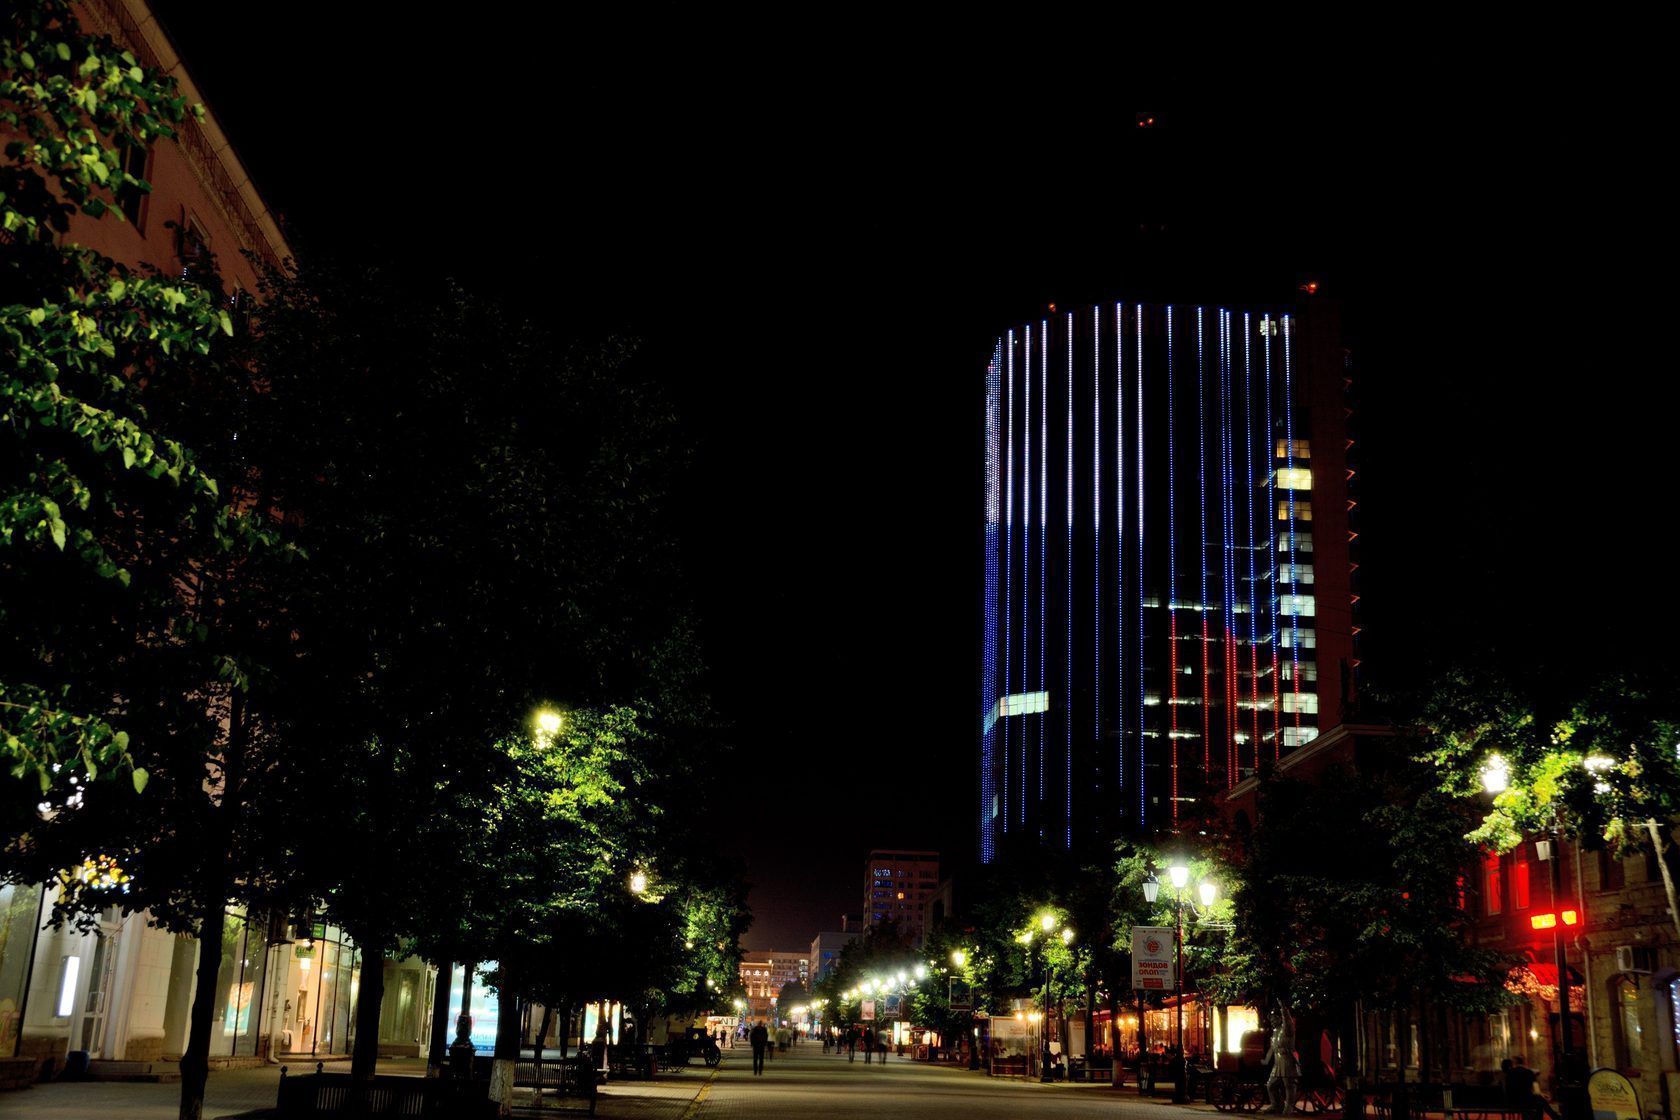 Фасадное освещение бизнес-центра «Челябинск-Сити» - освещение культурно-развлекательного центра, Челябинск, 2017